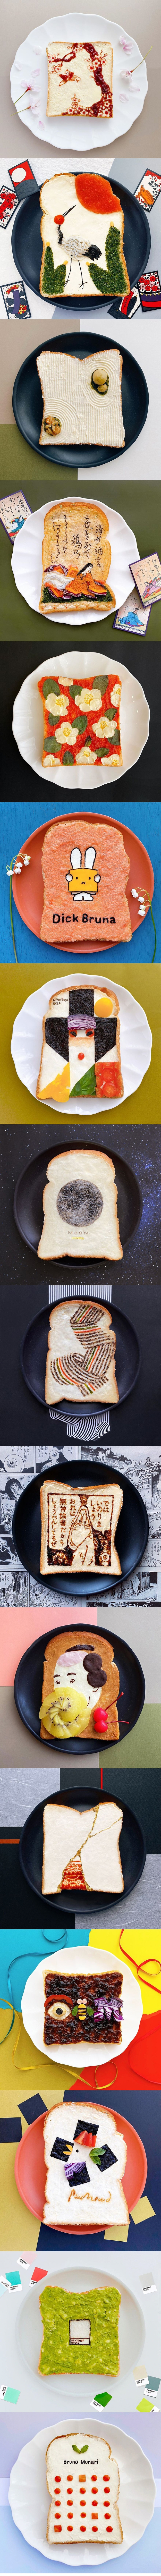 L'artiste japonaise Manami Sasaki, également connue sous le nom de sasamana1204 pour ses abonnés Instagram,crée de l'art sur des tranches de pain grillé tout en travaillant à domicile pendant le confinement.